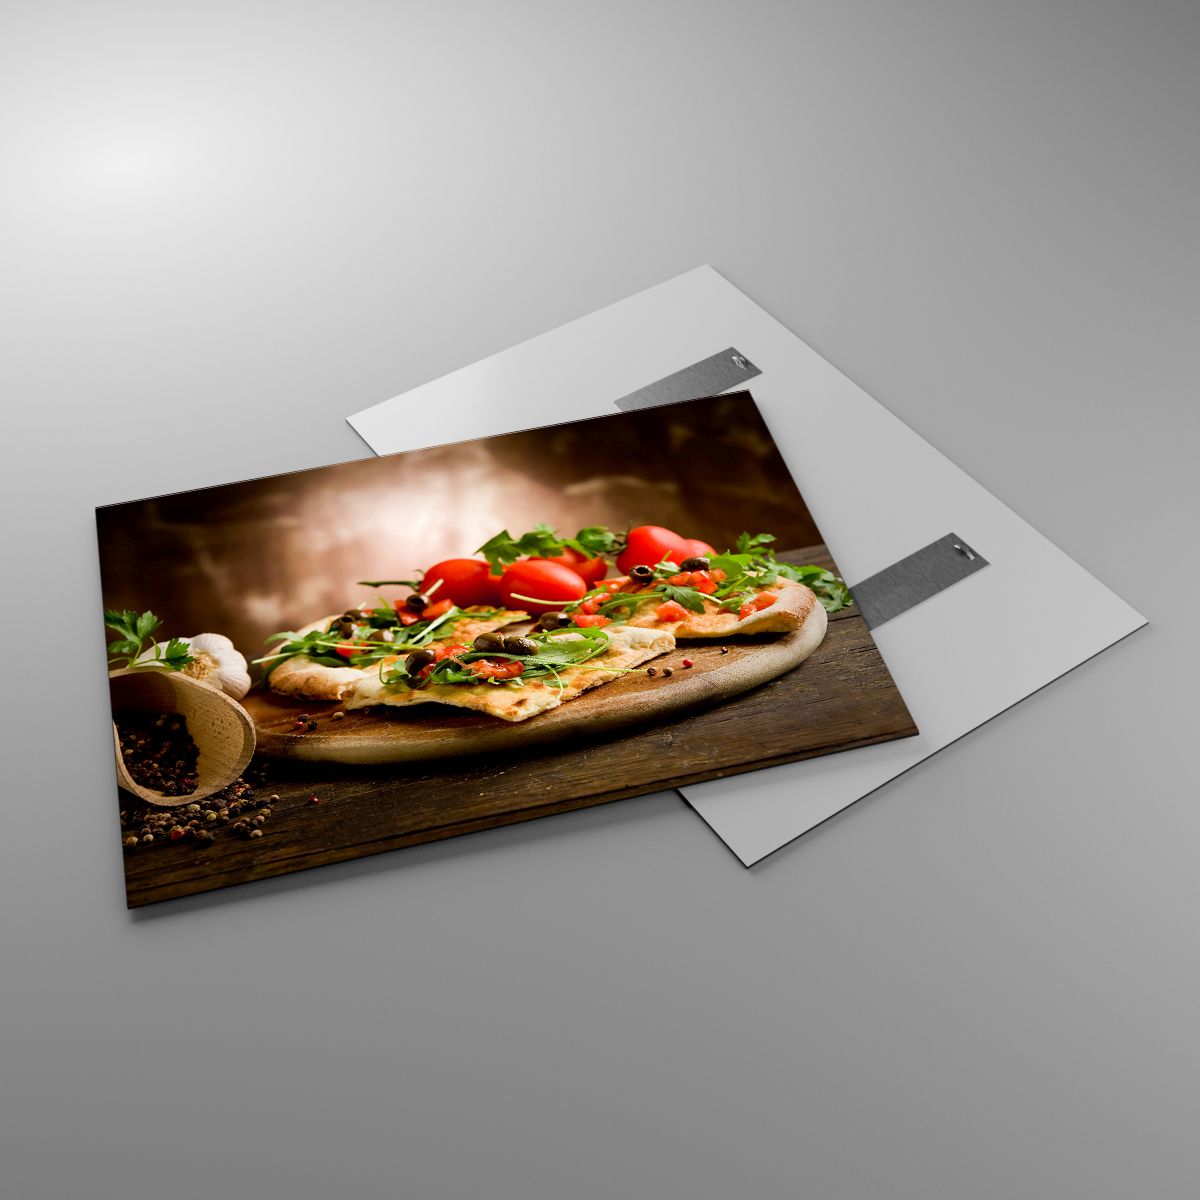 Impression La Gastronomie, Impression Pizza, Impression Italie, Impression Cuisine, Impression Tomates